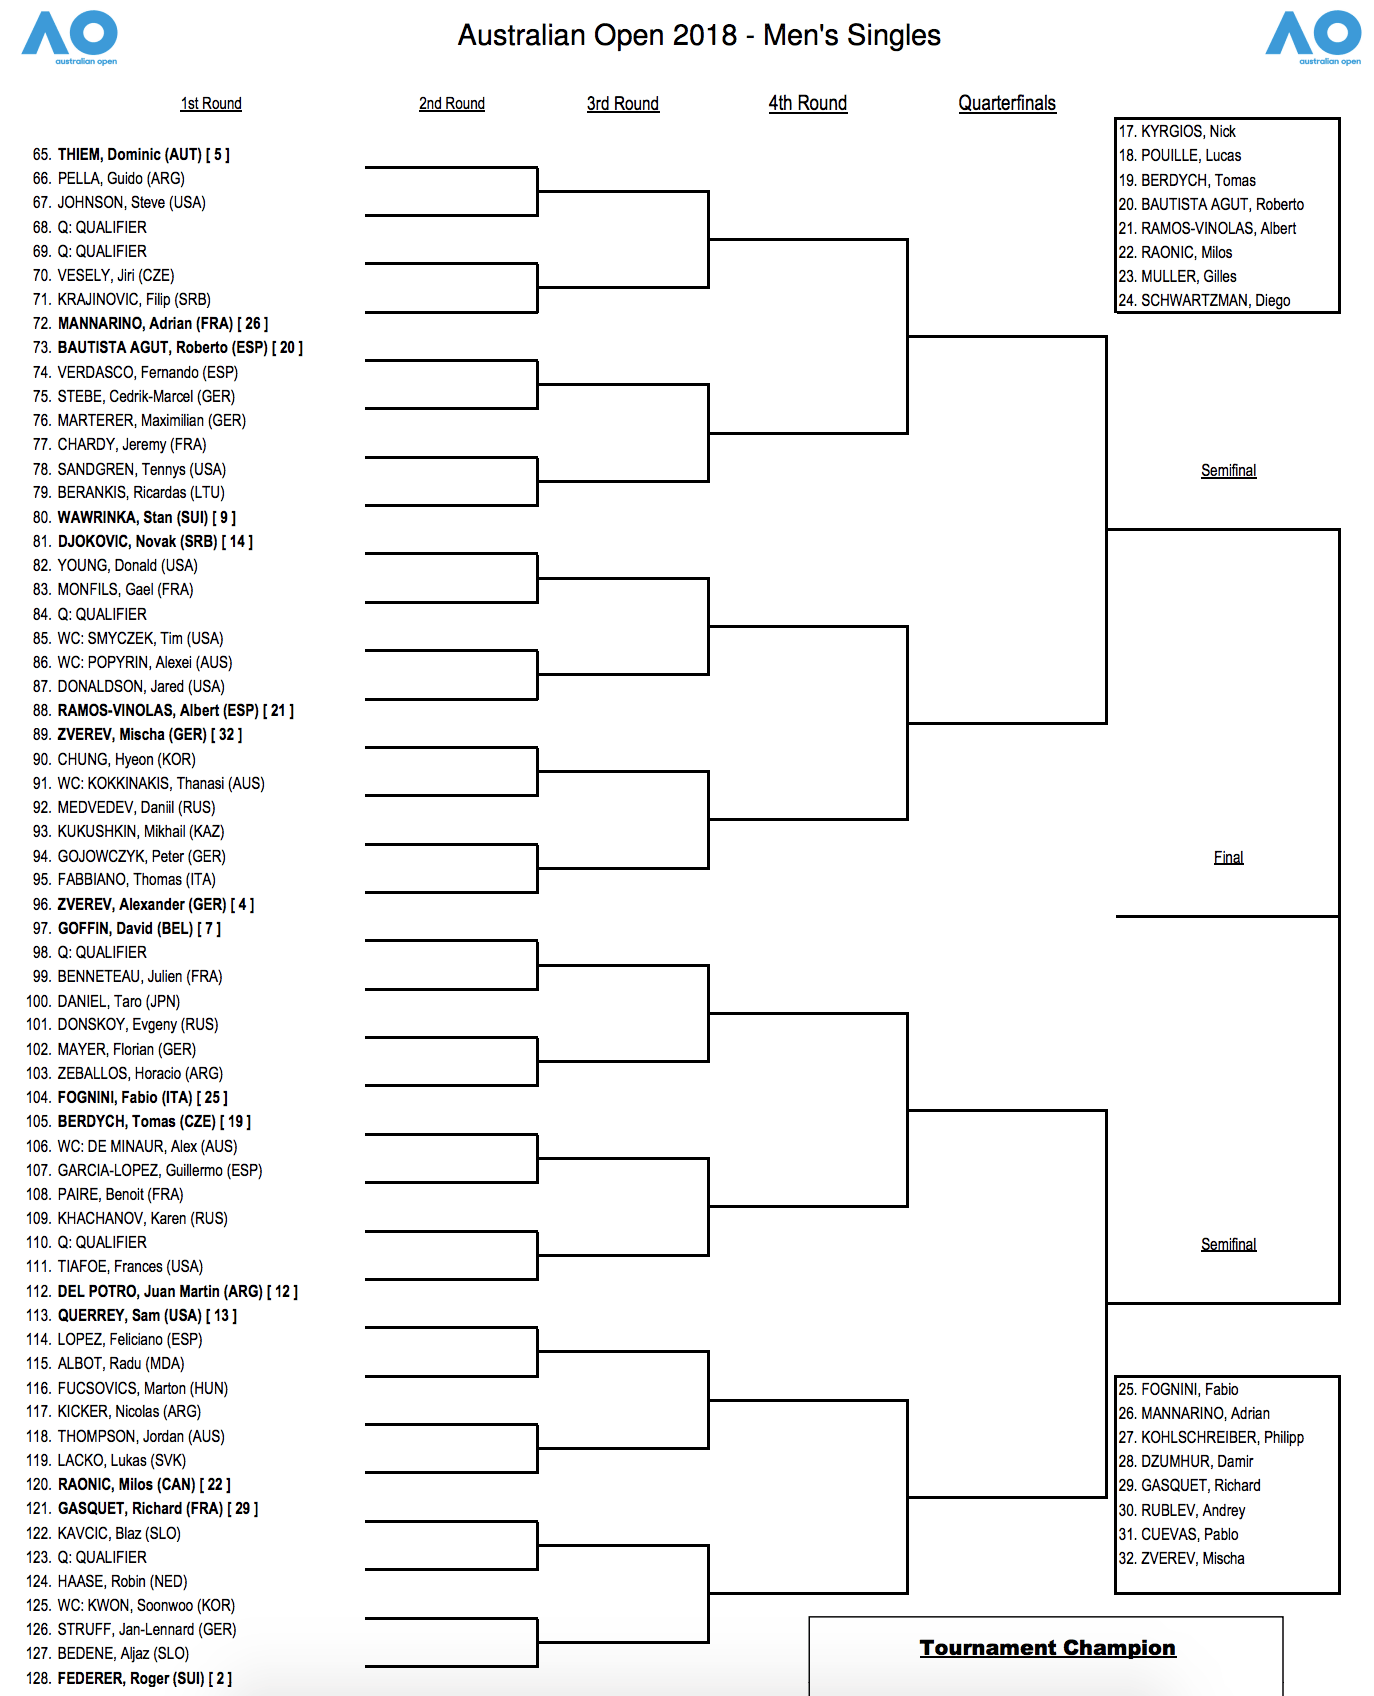 Australian Open Draw 2018 | Tennisnerd.net1374 x 1696